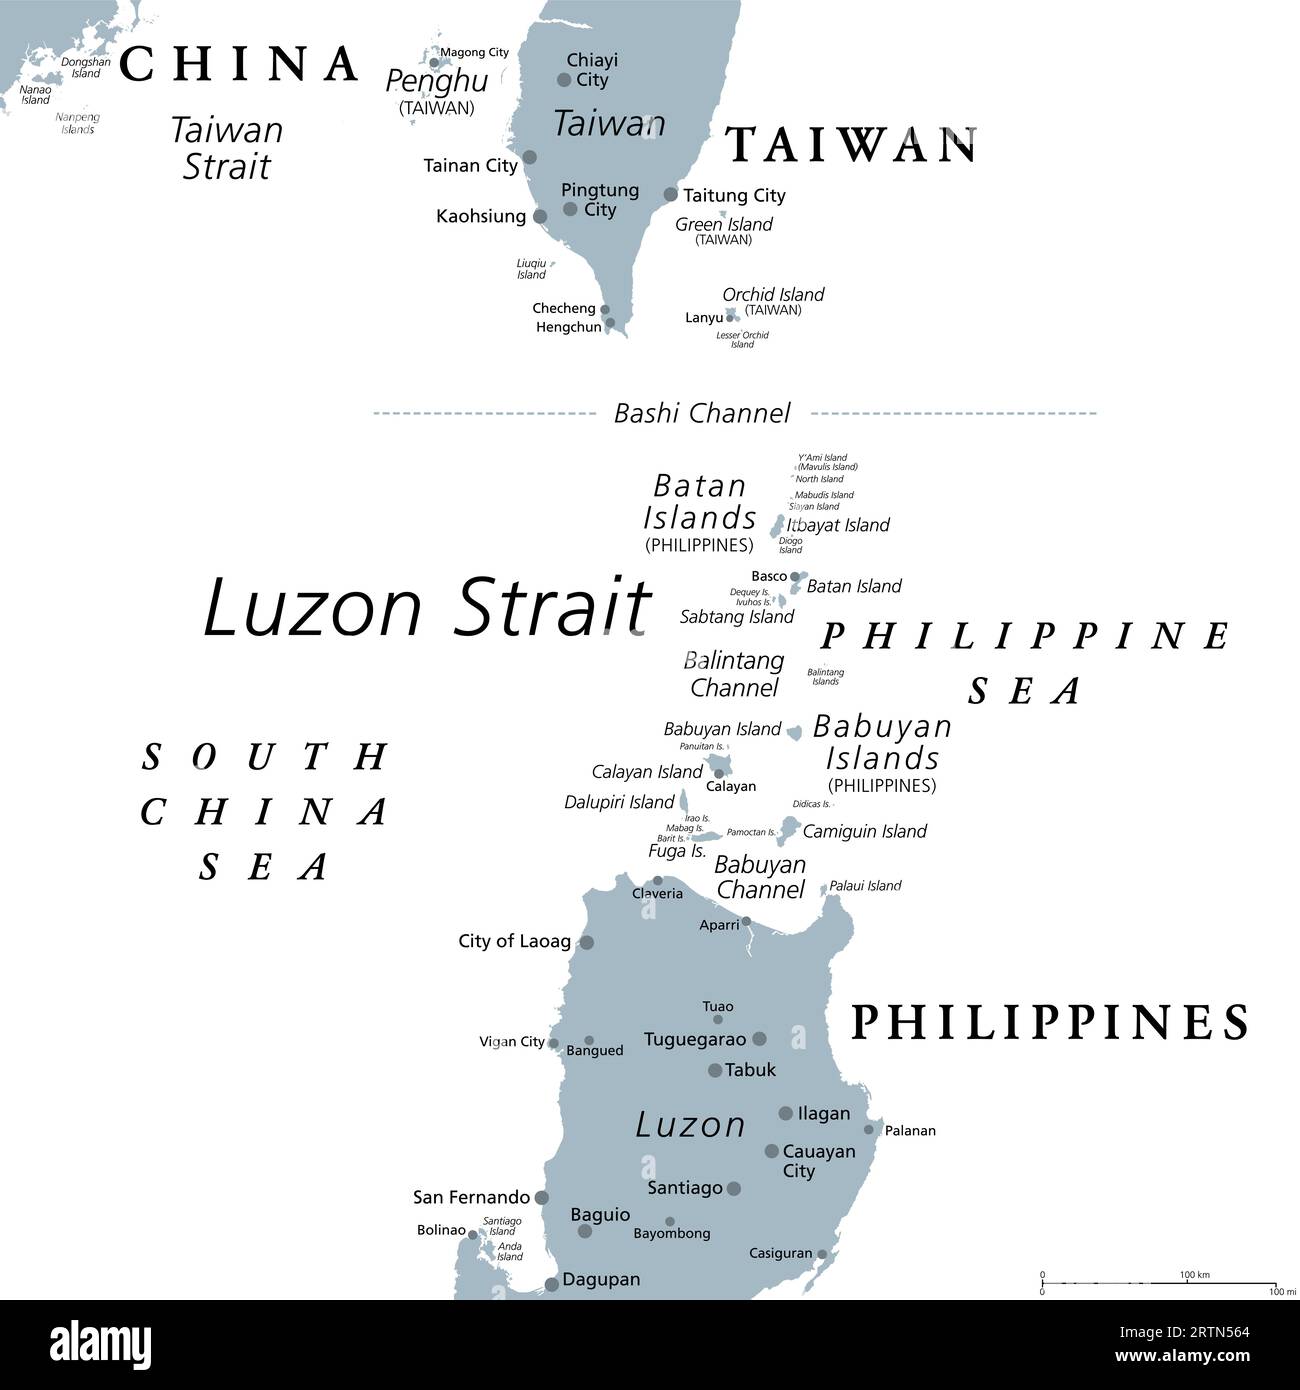 Luzon Strait, mappa politica grigia. Stretto tra Luzon e Taiwan, che collega il Mare delle Filippine al Mare della Cina meridionale nell'Oceano Pacifico occidentale. Foto Stock